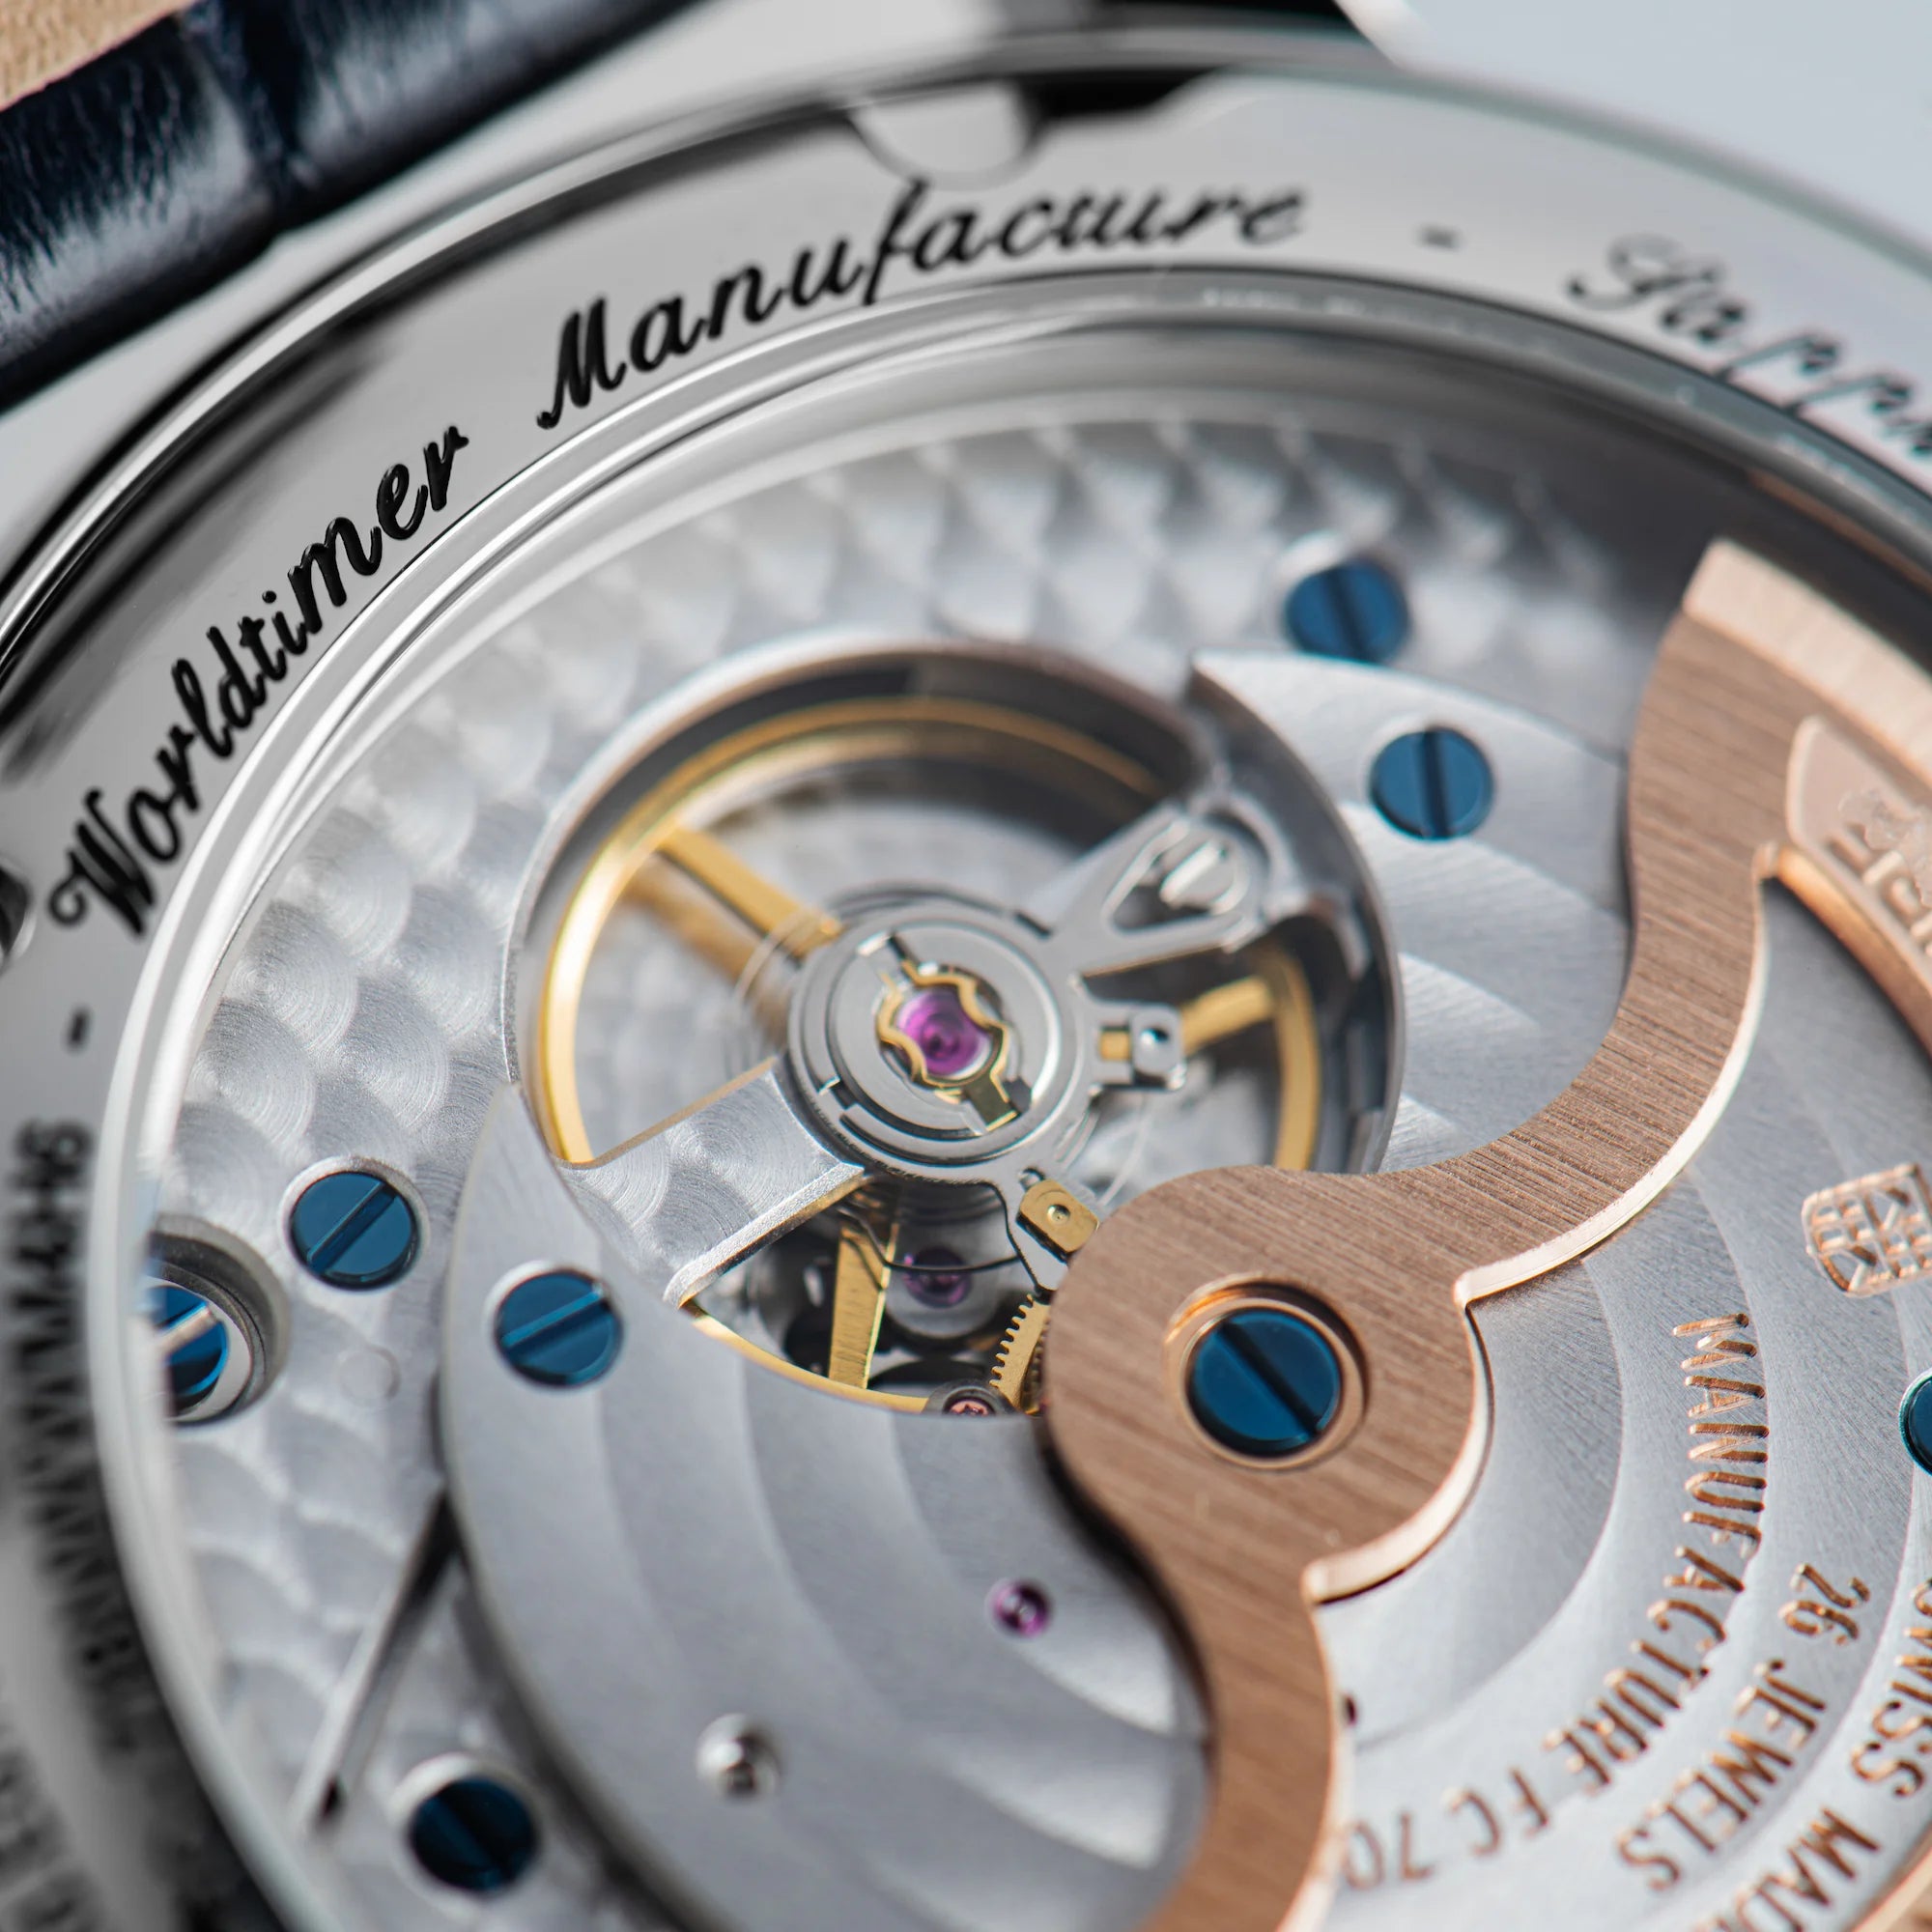 Makroaufnahme des limitierten Classic Manufacture Worldtimers von Fredeique Constant mit Fokus auf dem Uhrwerk